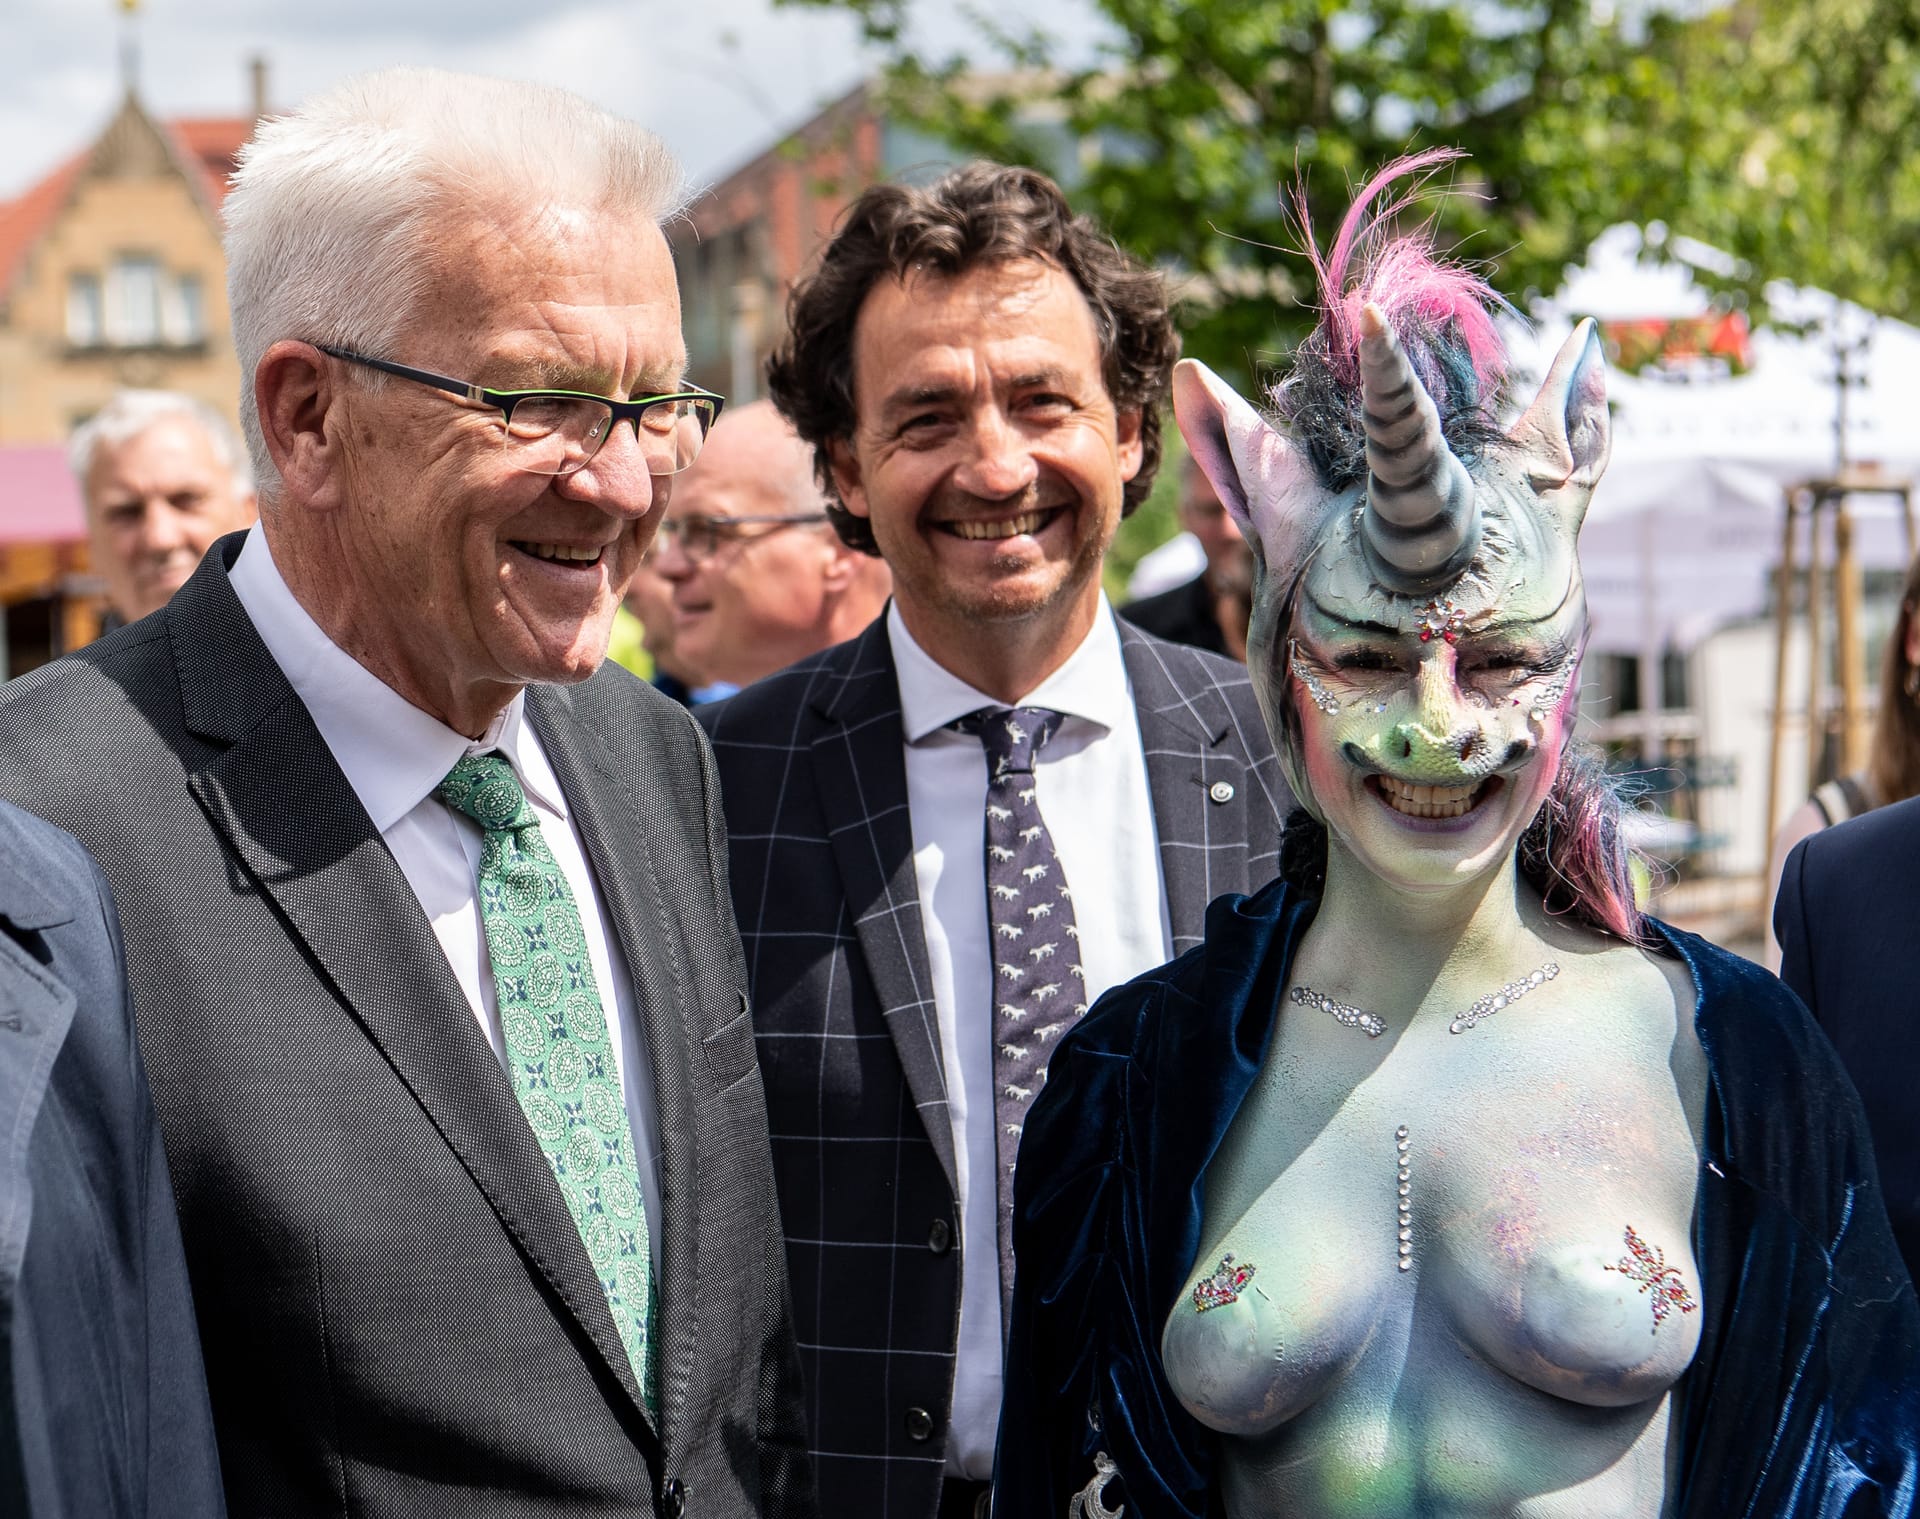 Winfried Kretschmann und Stadträtin Cynthia Schneider: Der Ministerpräsident von Baden-Württemberg kann die Aufregung um die Einhorn-Kostümierung nicht verstehen.